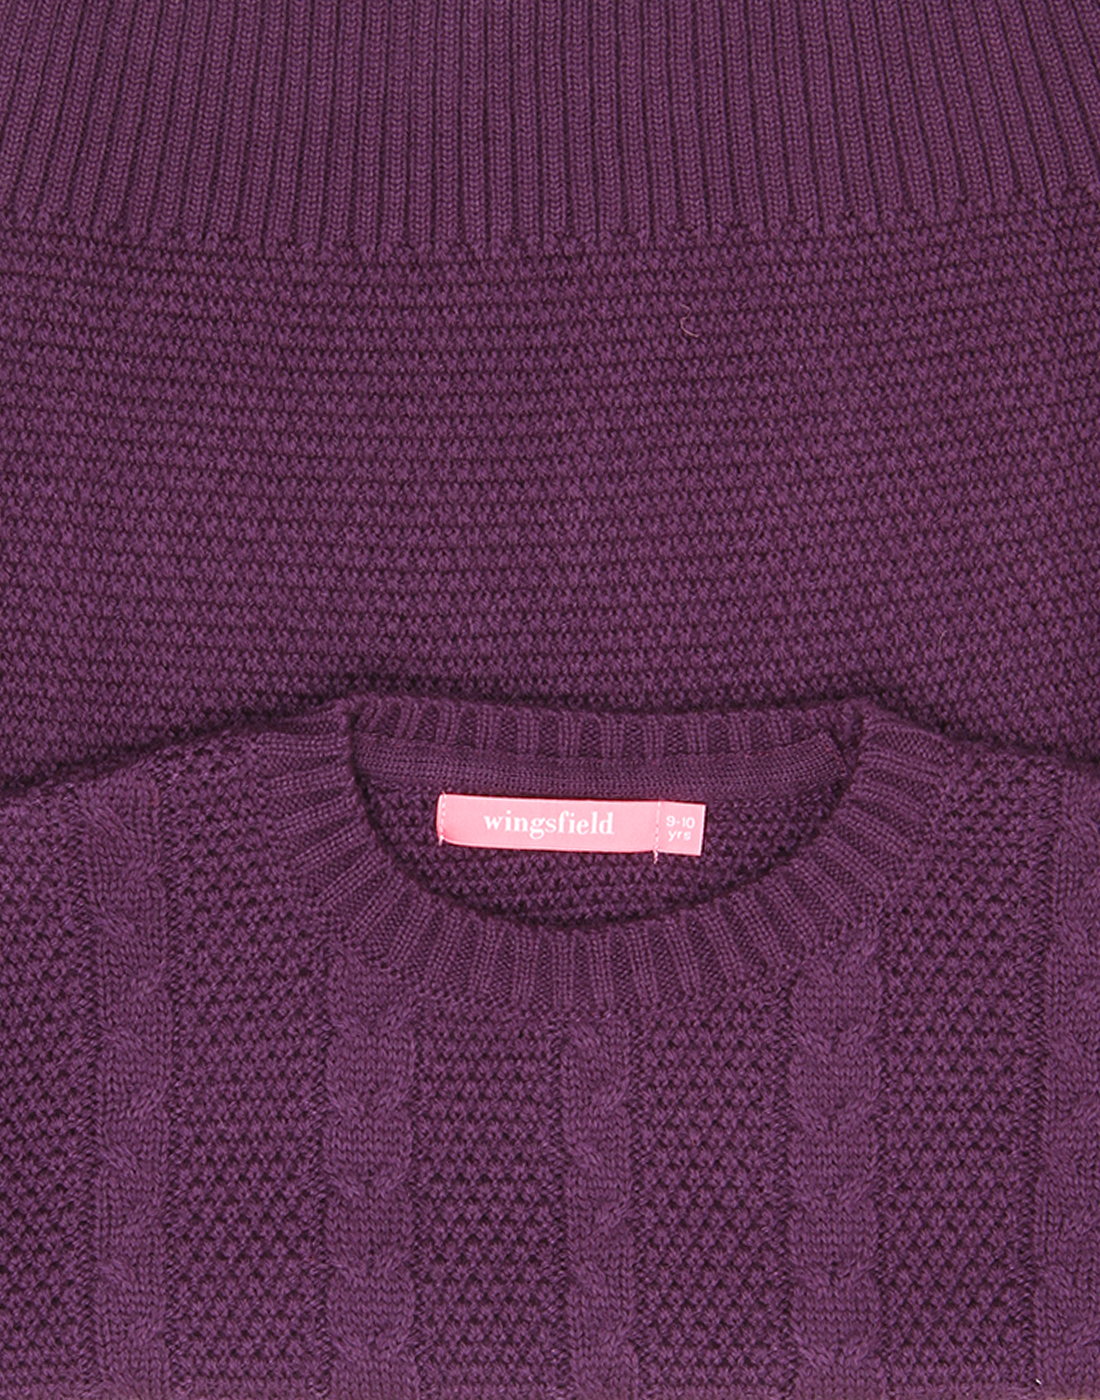 Wingsfield Girls Purple Sweater